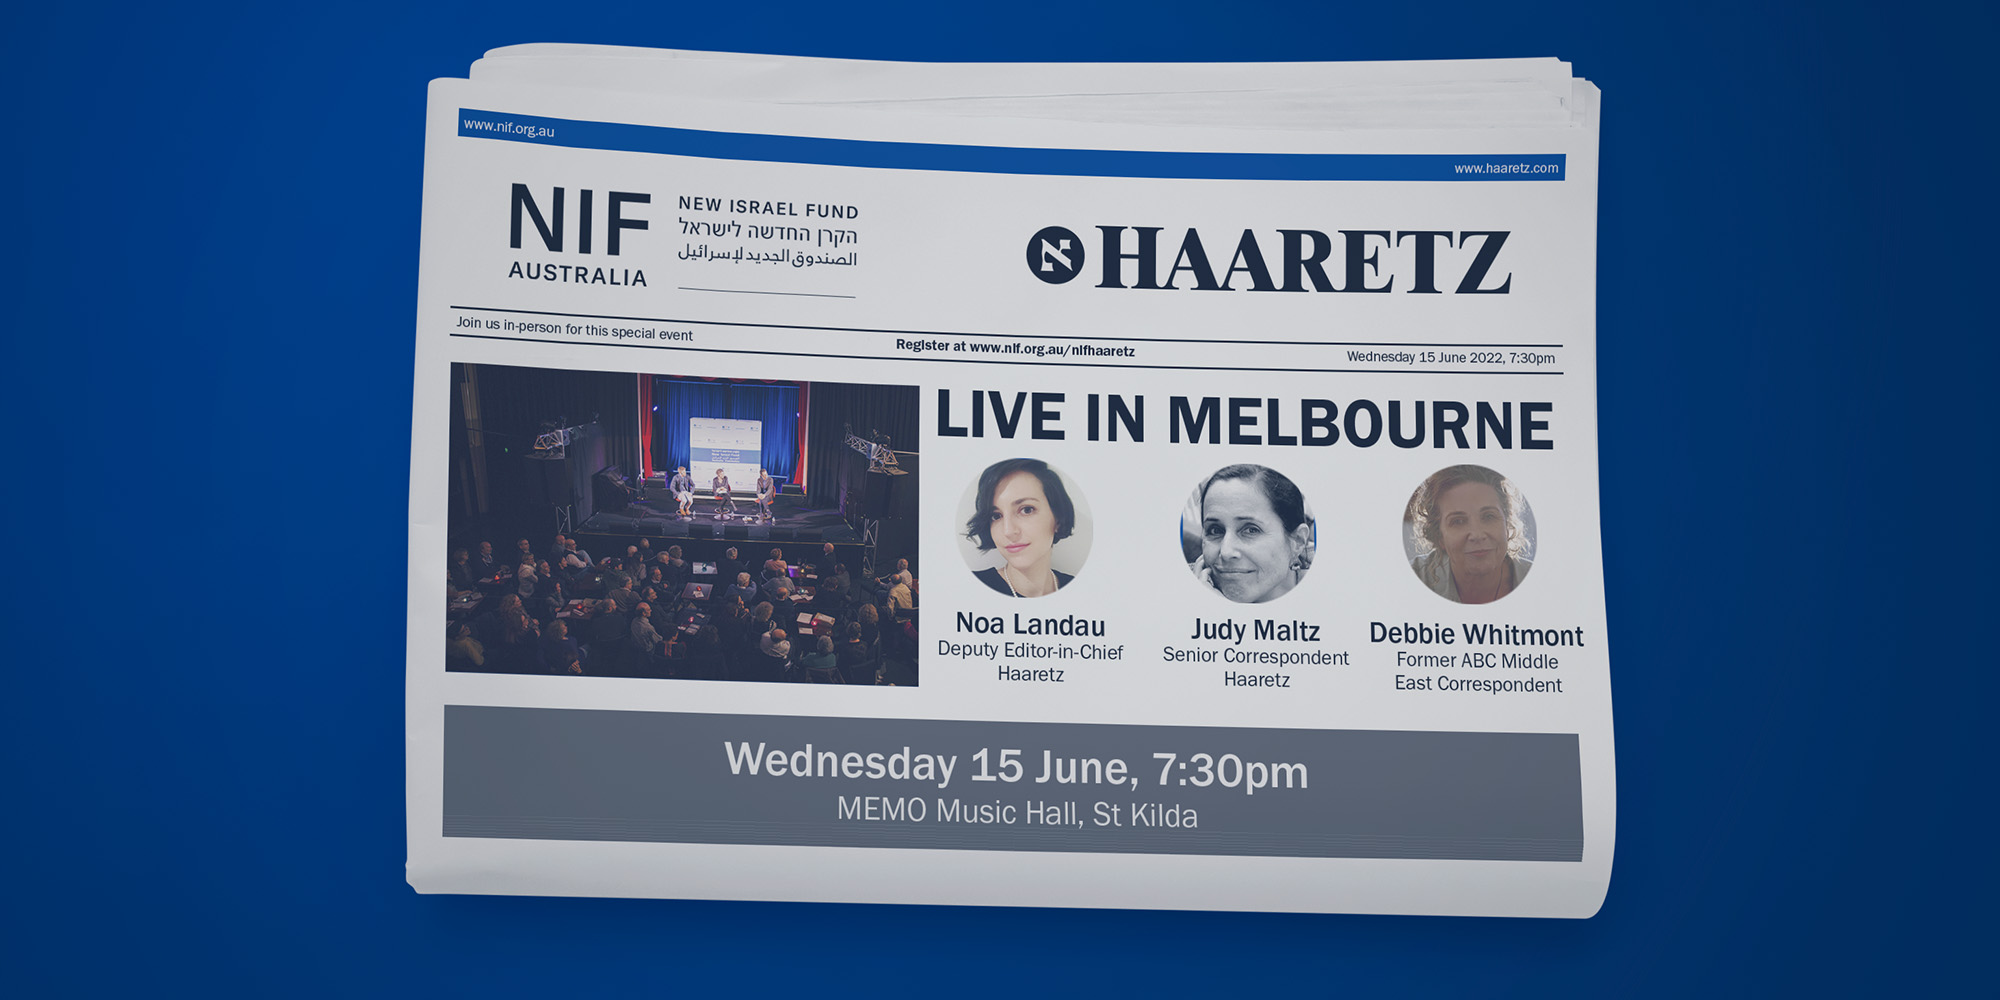 NIF + Haaretz Live in Melbourne